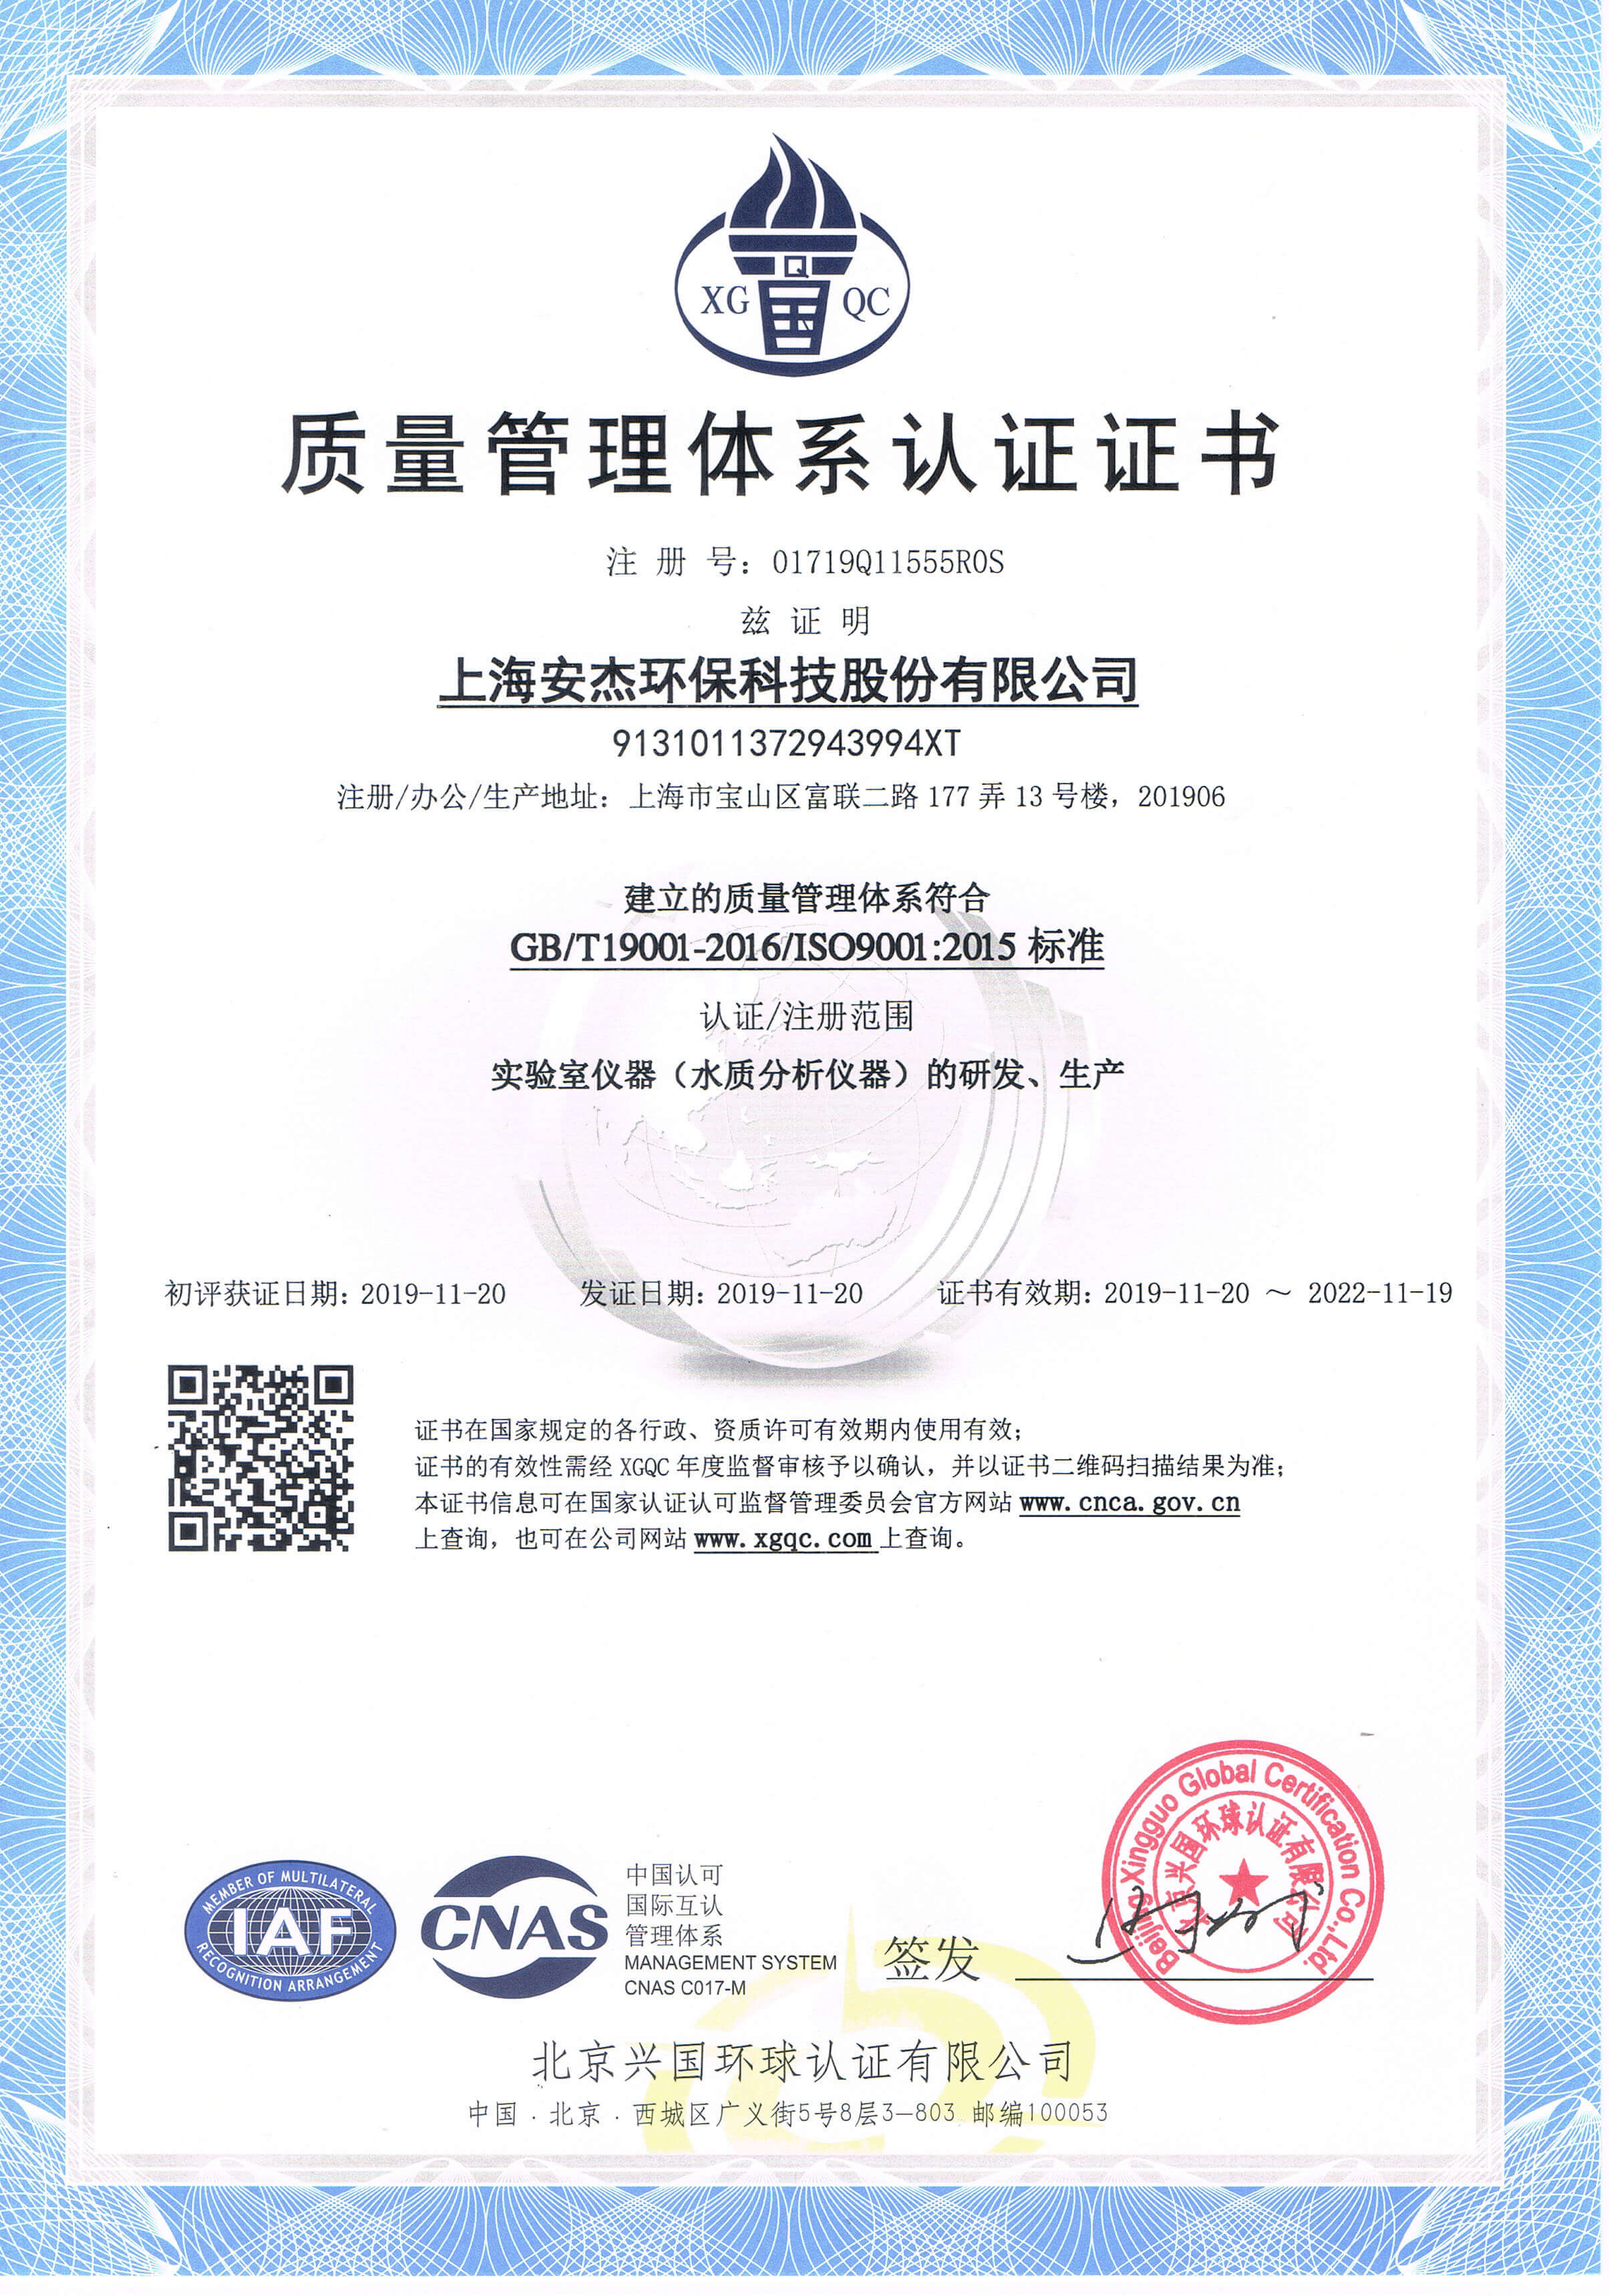 iso9000:2015认证证书